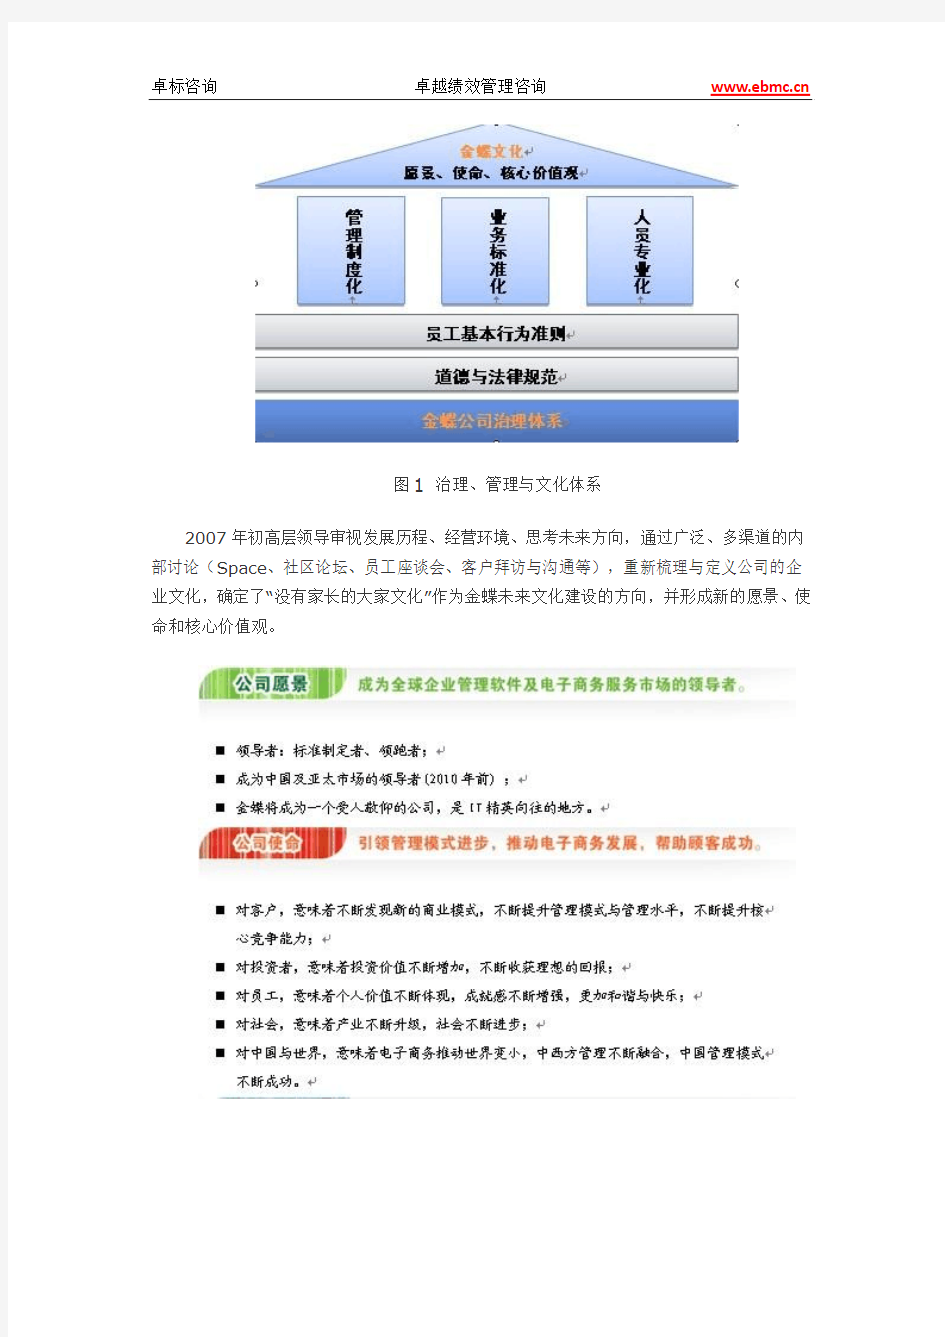 卓越绩效自评报告--2008年深圳市市长质量奖获奖单位-金蝶软件(中国)有限公司